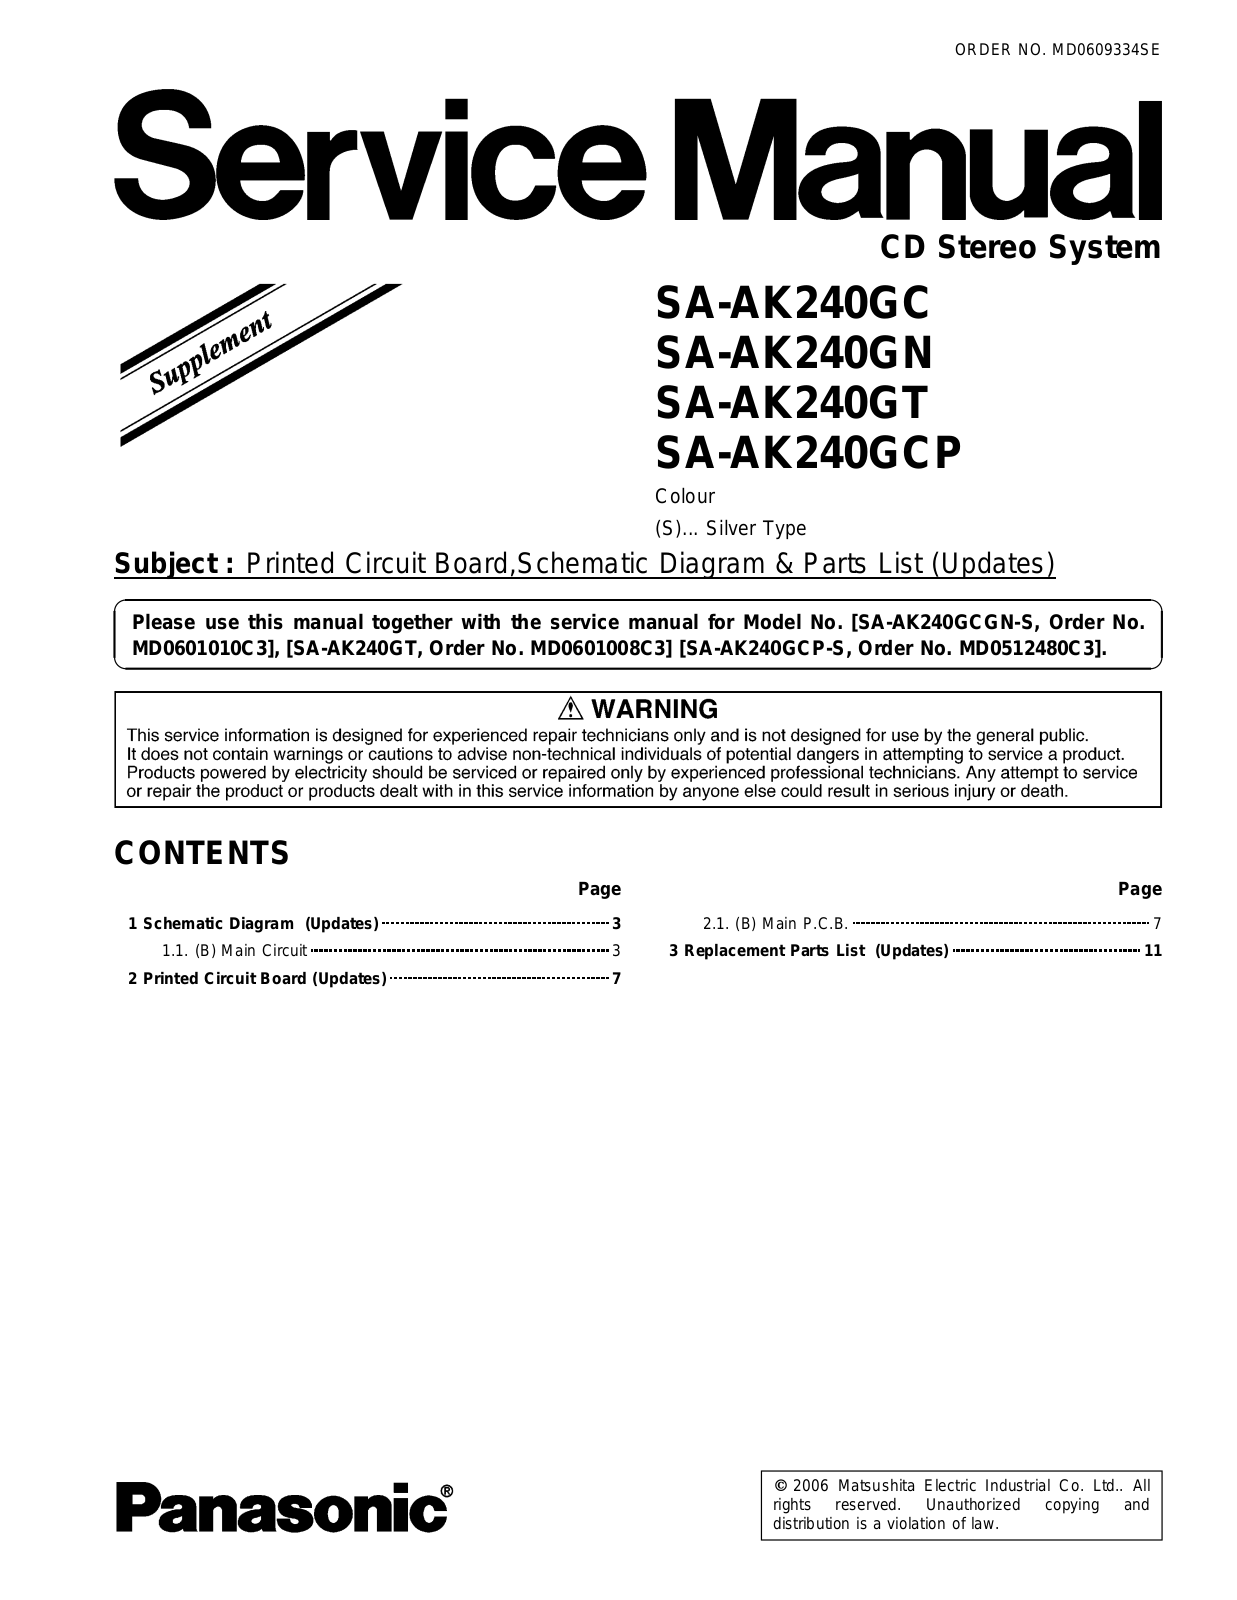 Panasonic SAAK-240-GC, SAAK-240-GCP, SAAK-240-GN, SAAK-240-GT Service manual